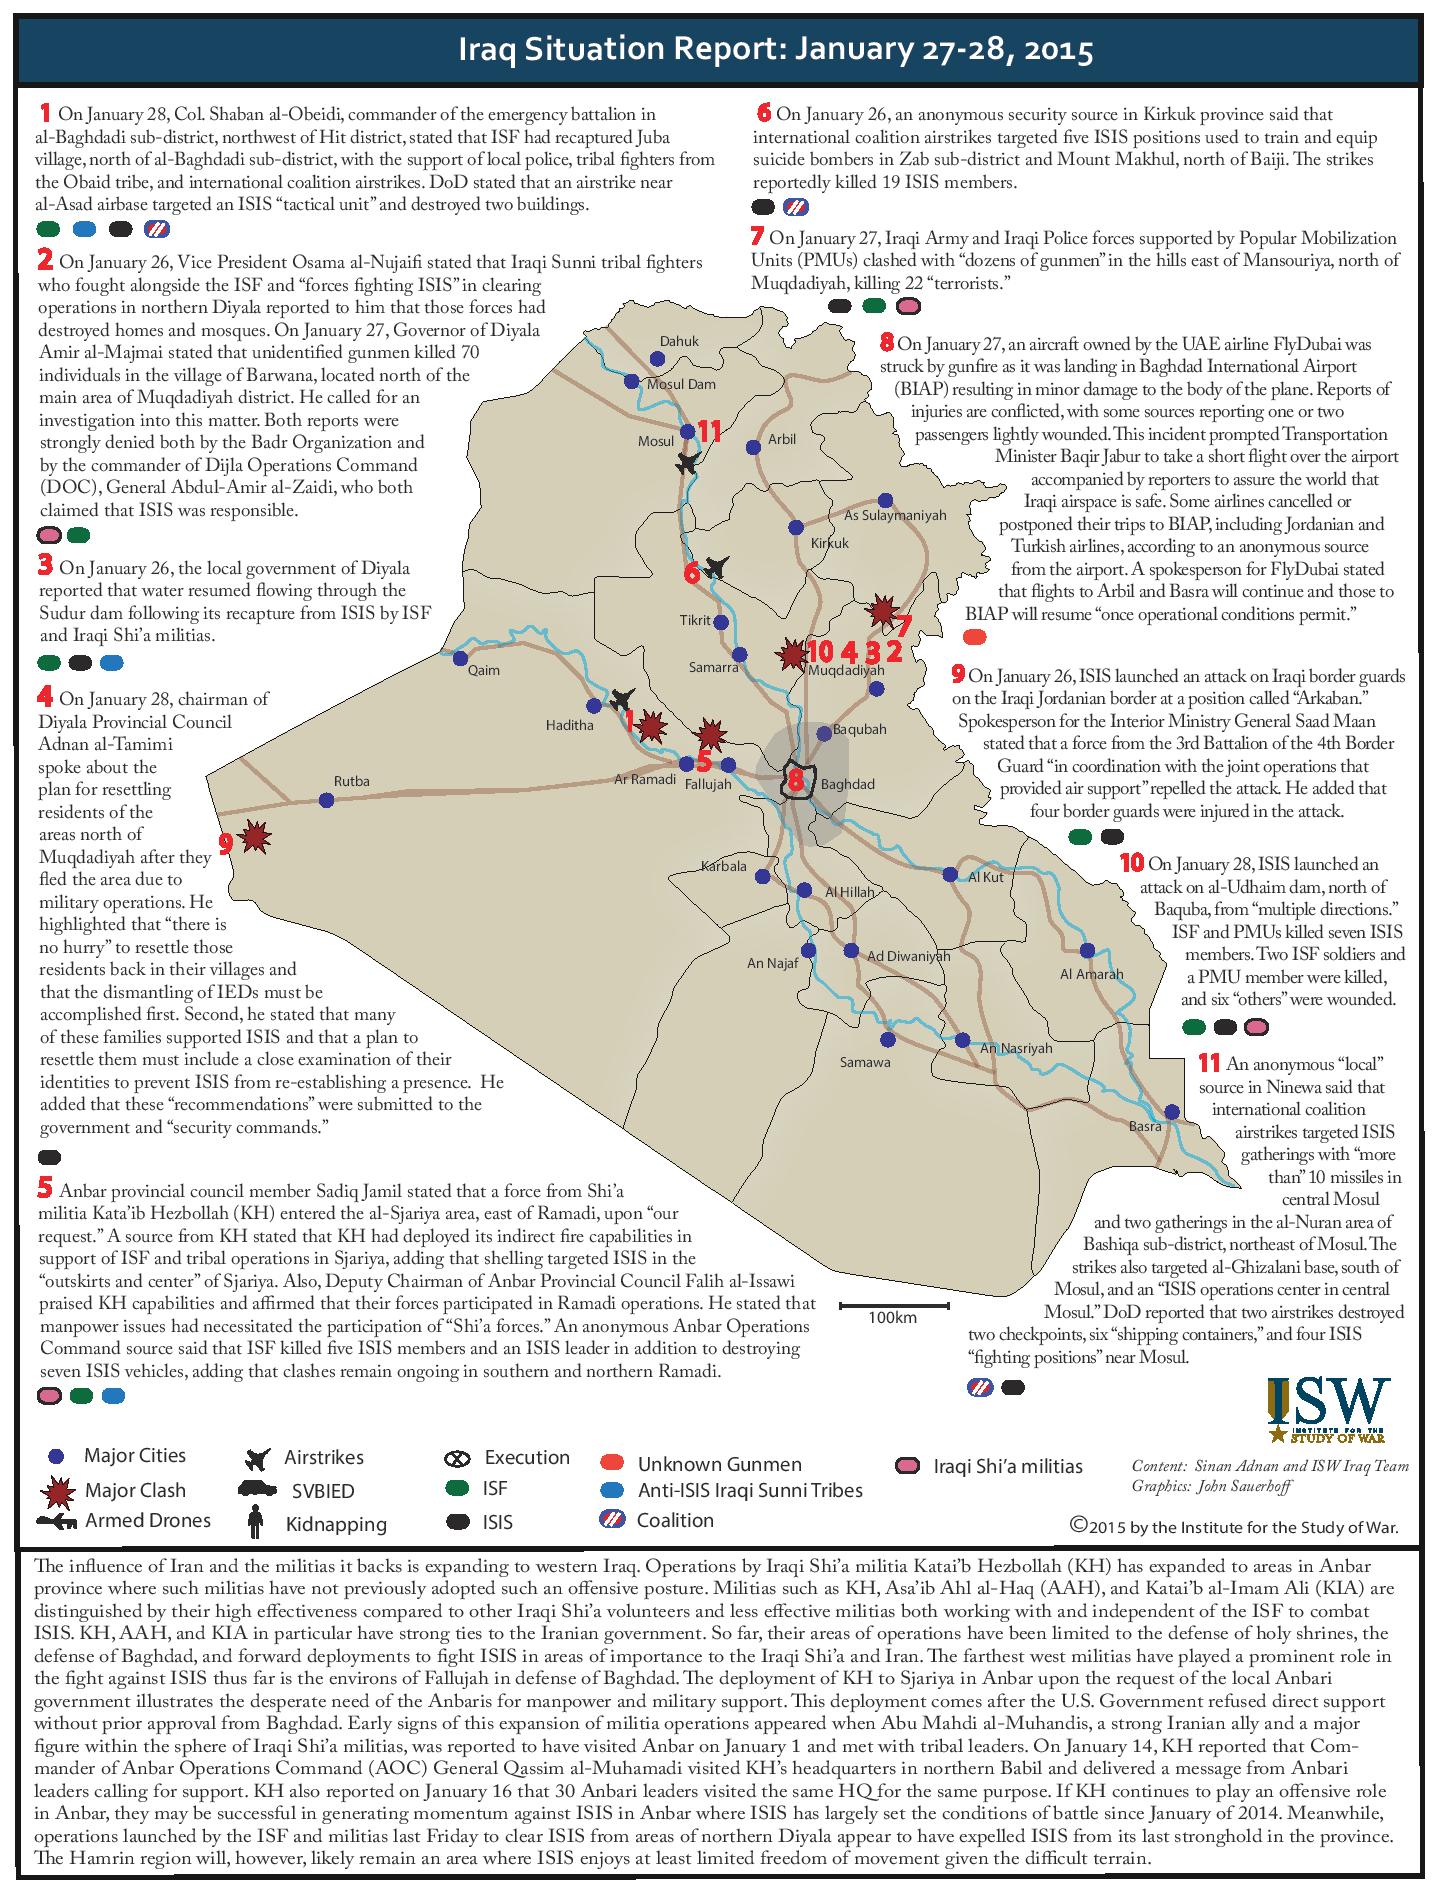 تقرير يكشف وضع العراق ما بين الفترة 26-28 كانون الثاني/يناير 2015